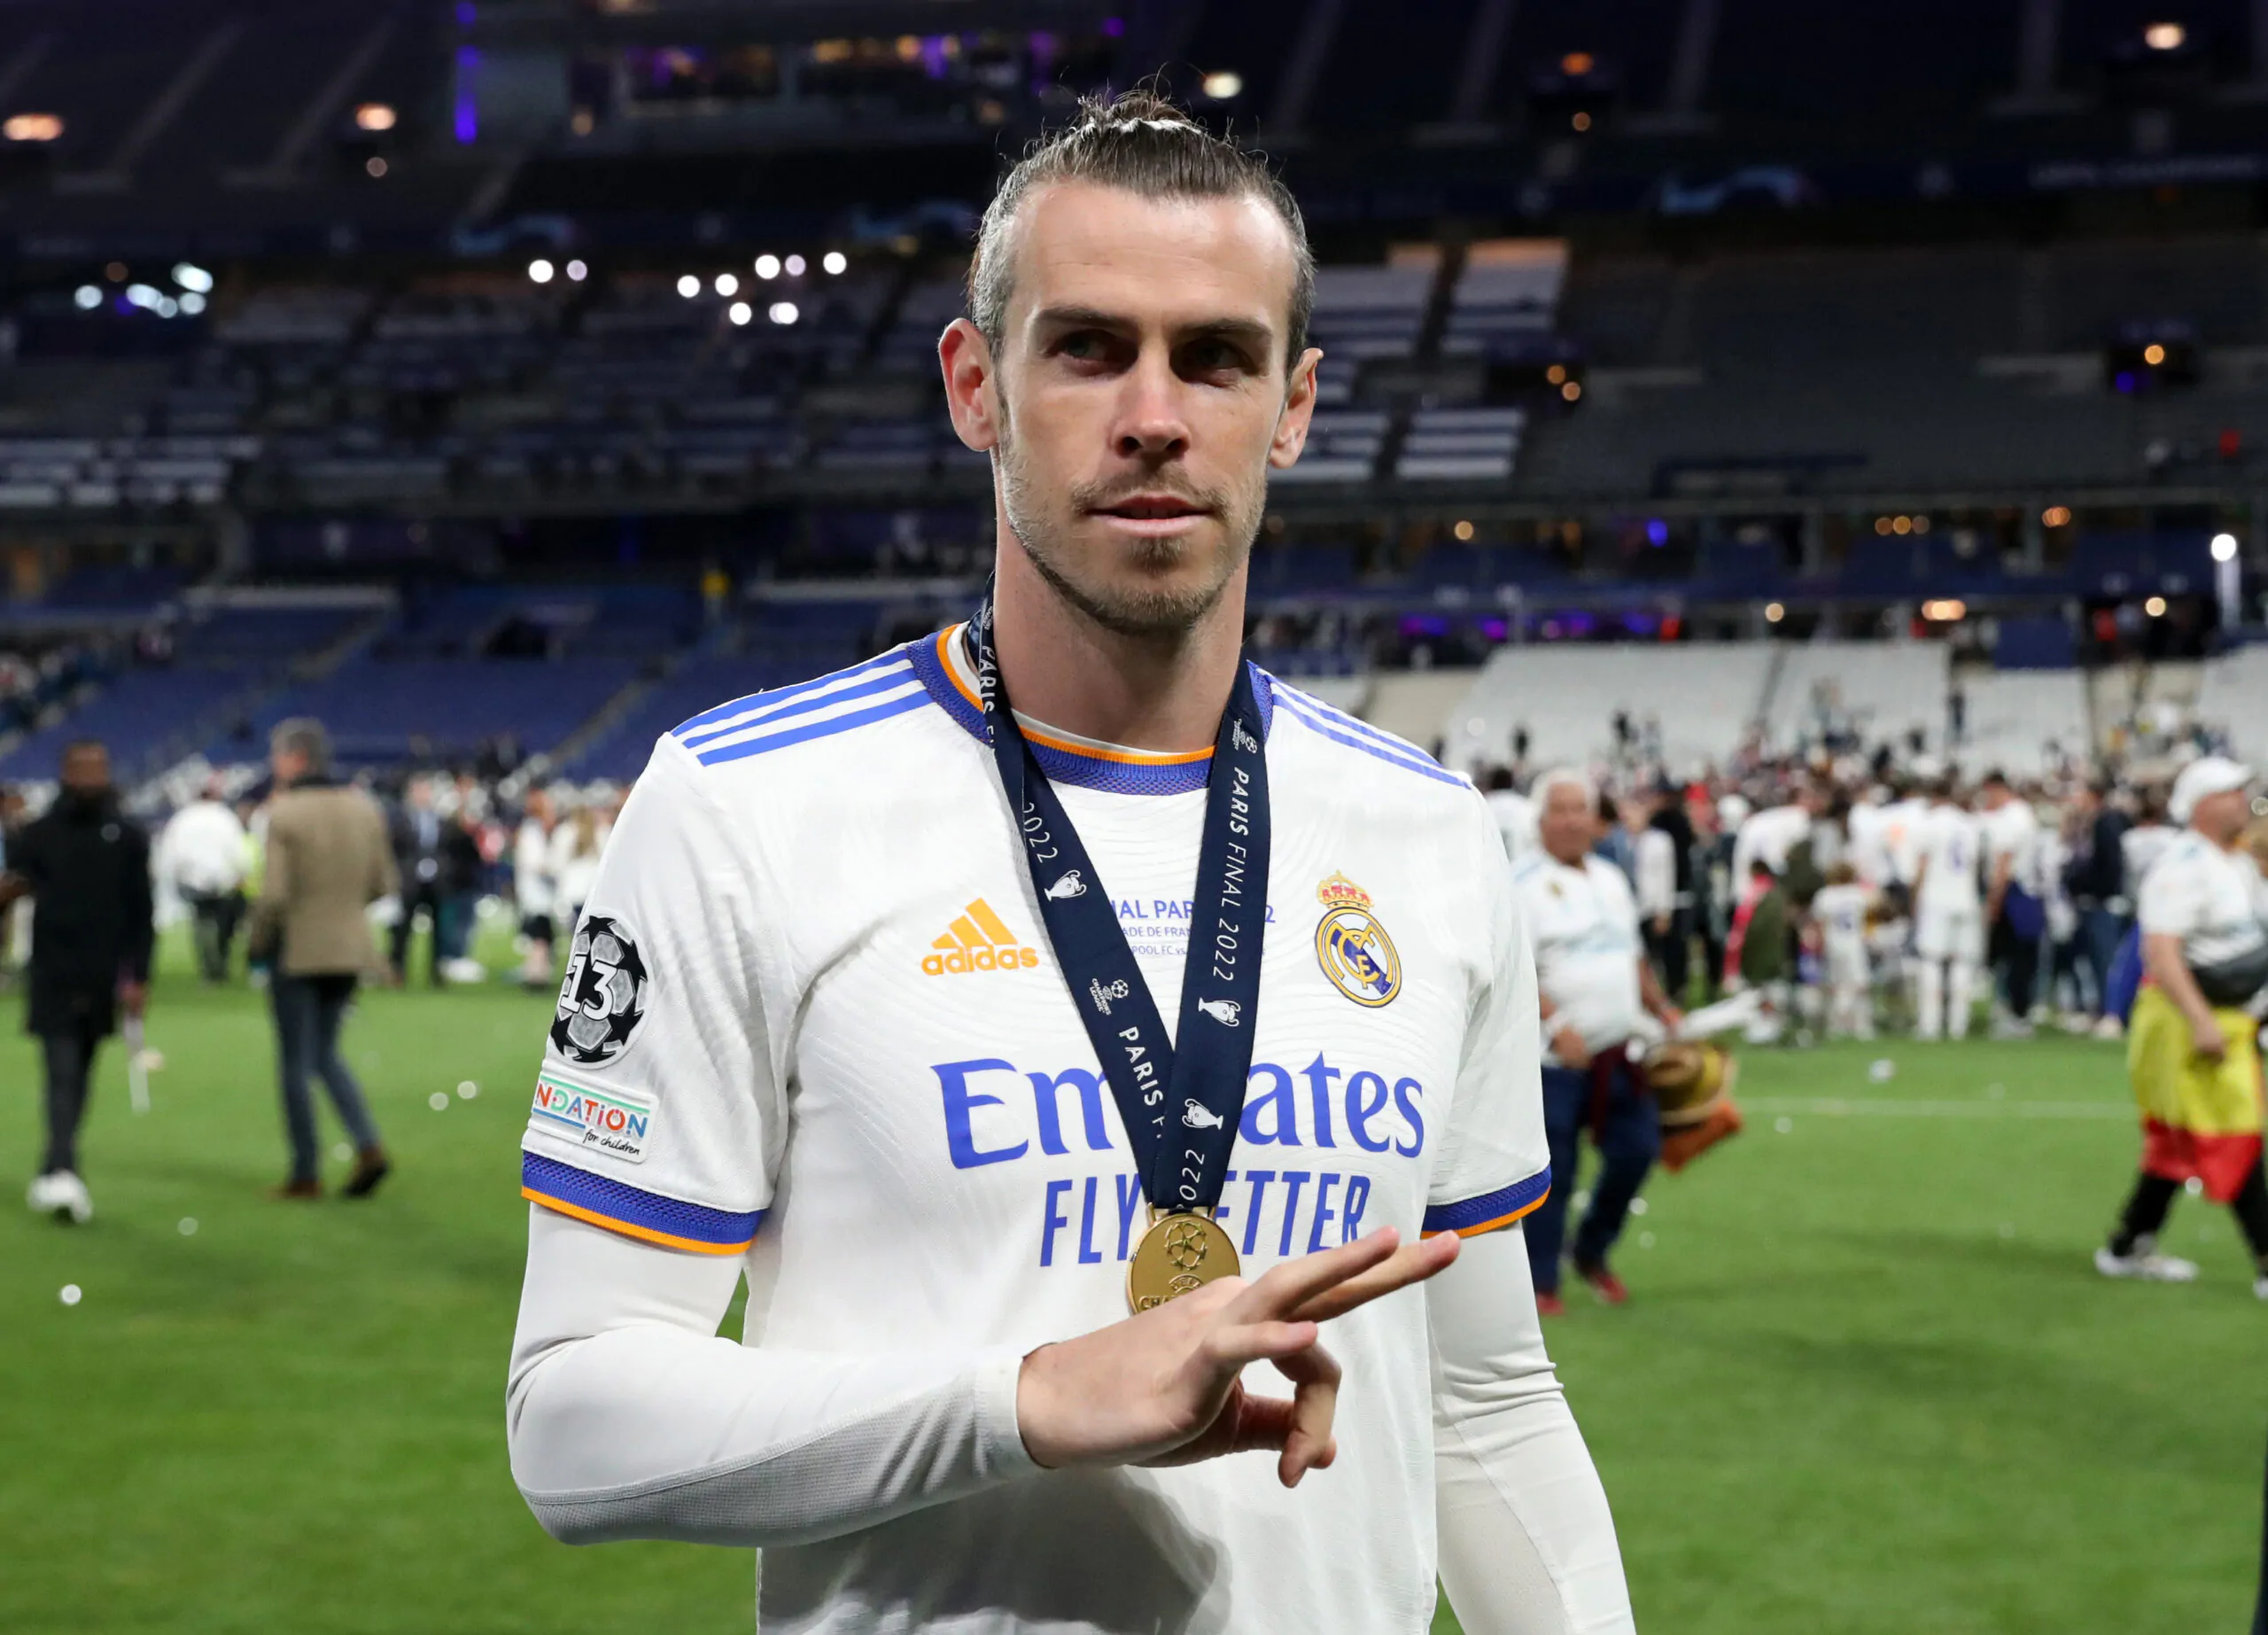 UFFICIALE – Gareth Bale si ritira dal calcio giocato: l’annuncio